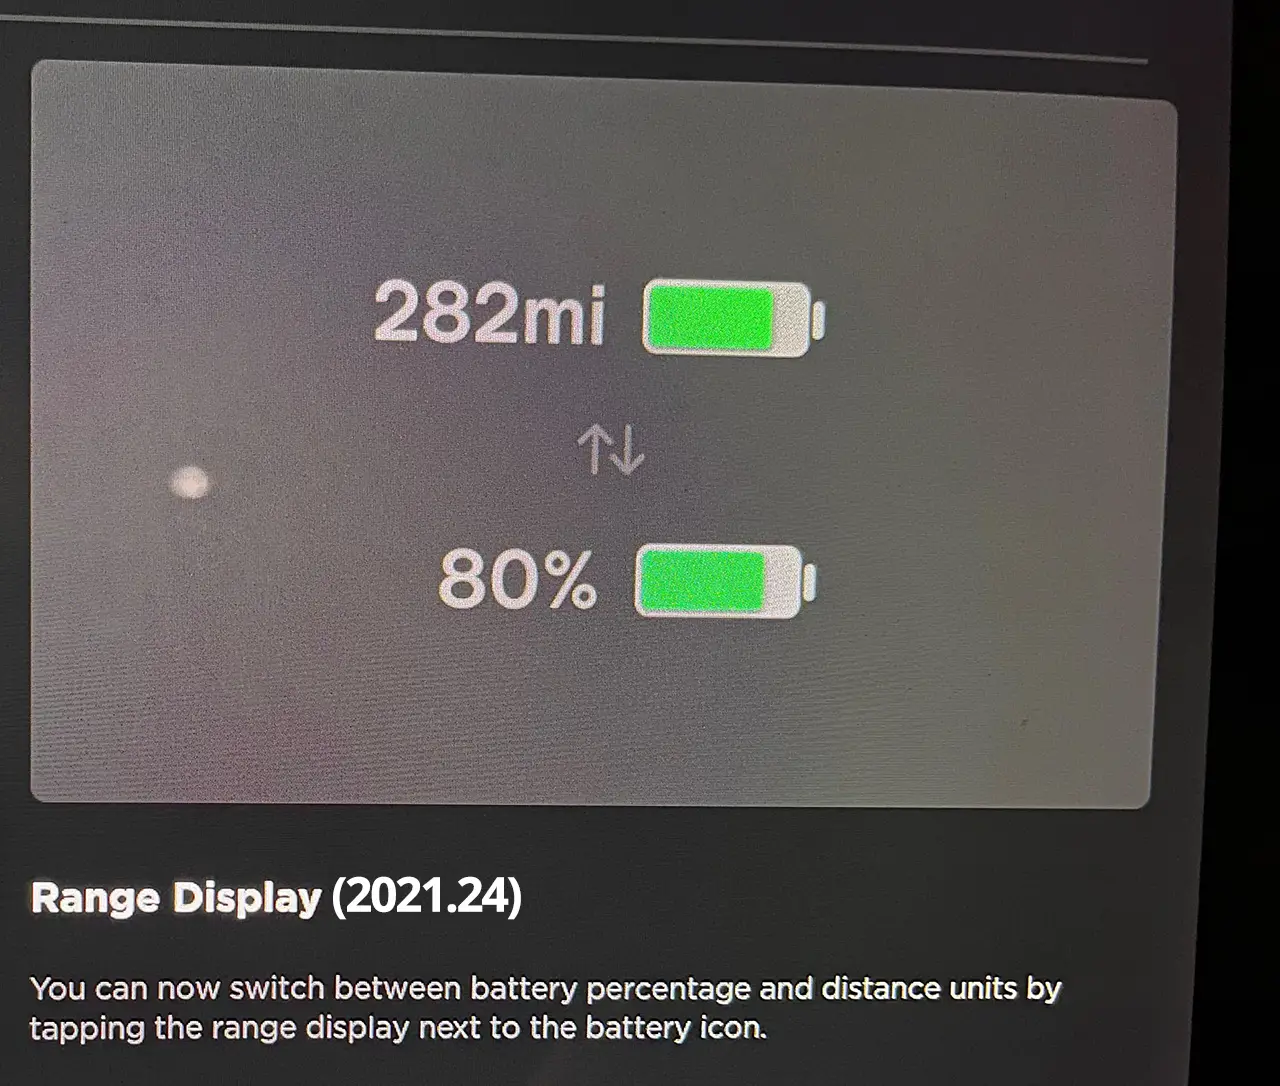 Tesla software version 2021.24 release notes for Range Display.